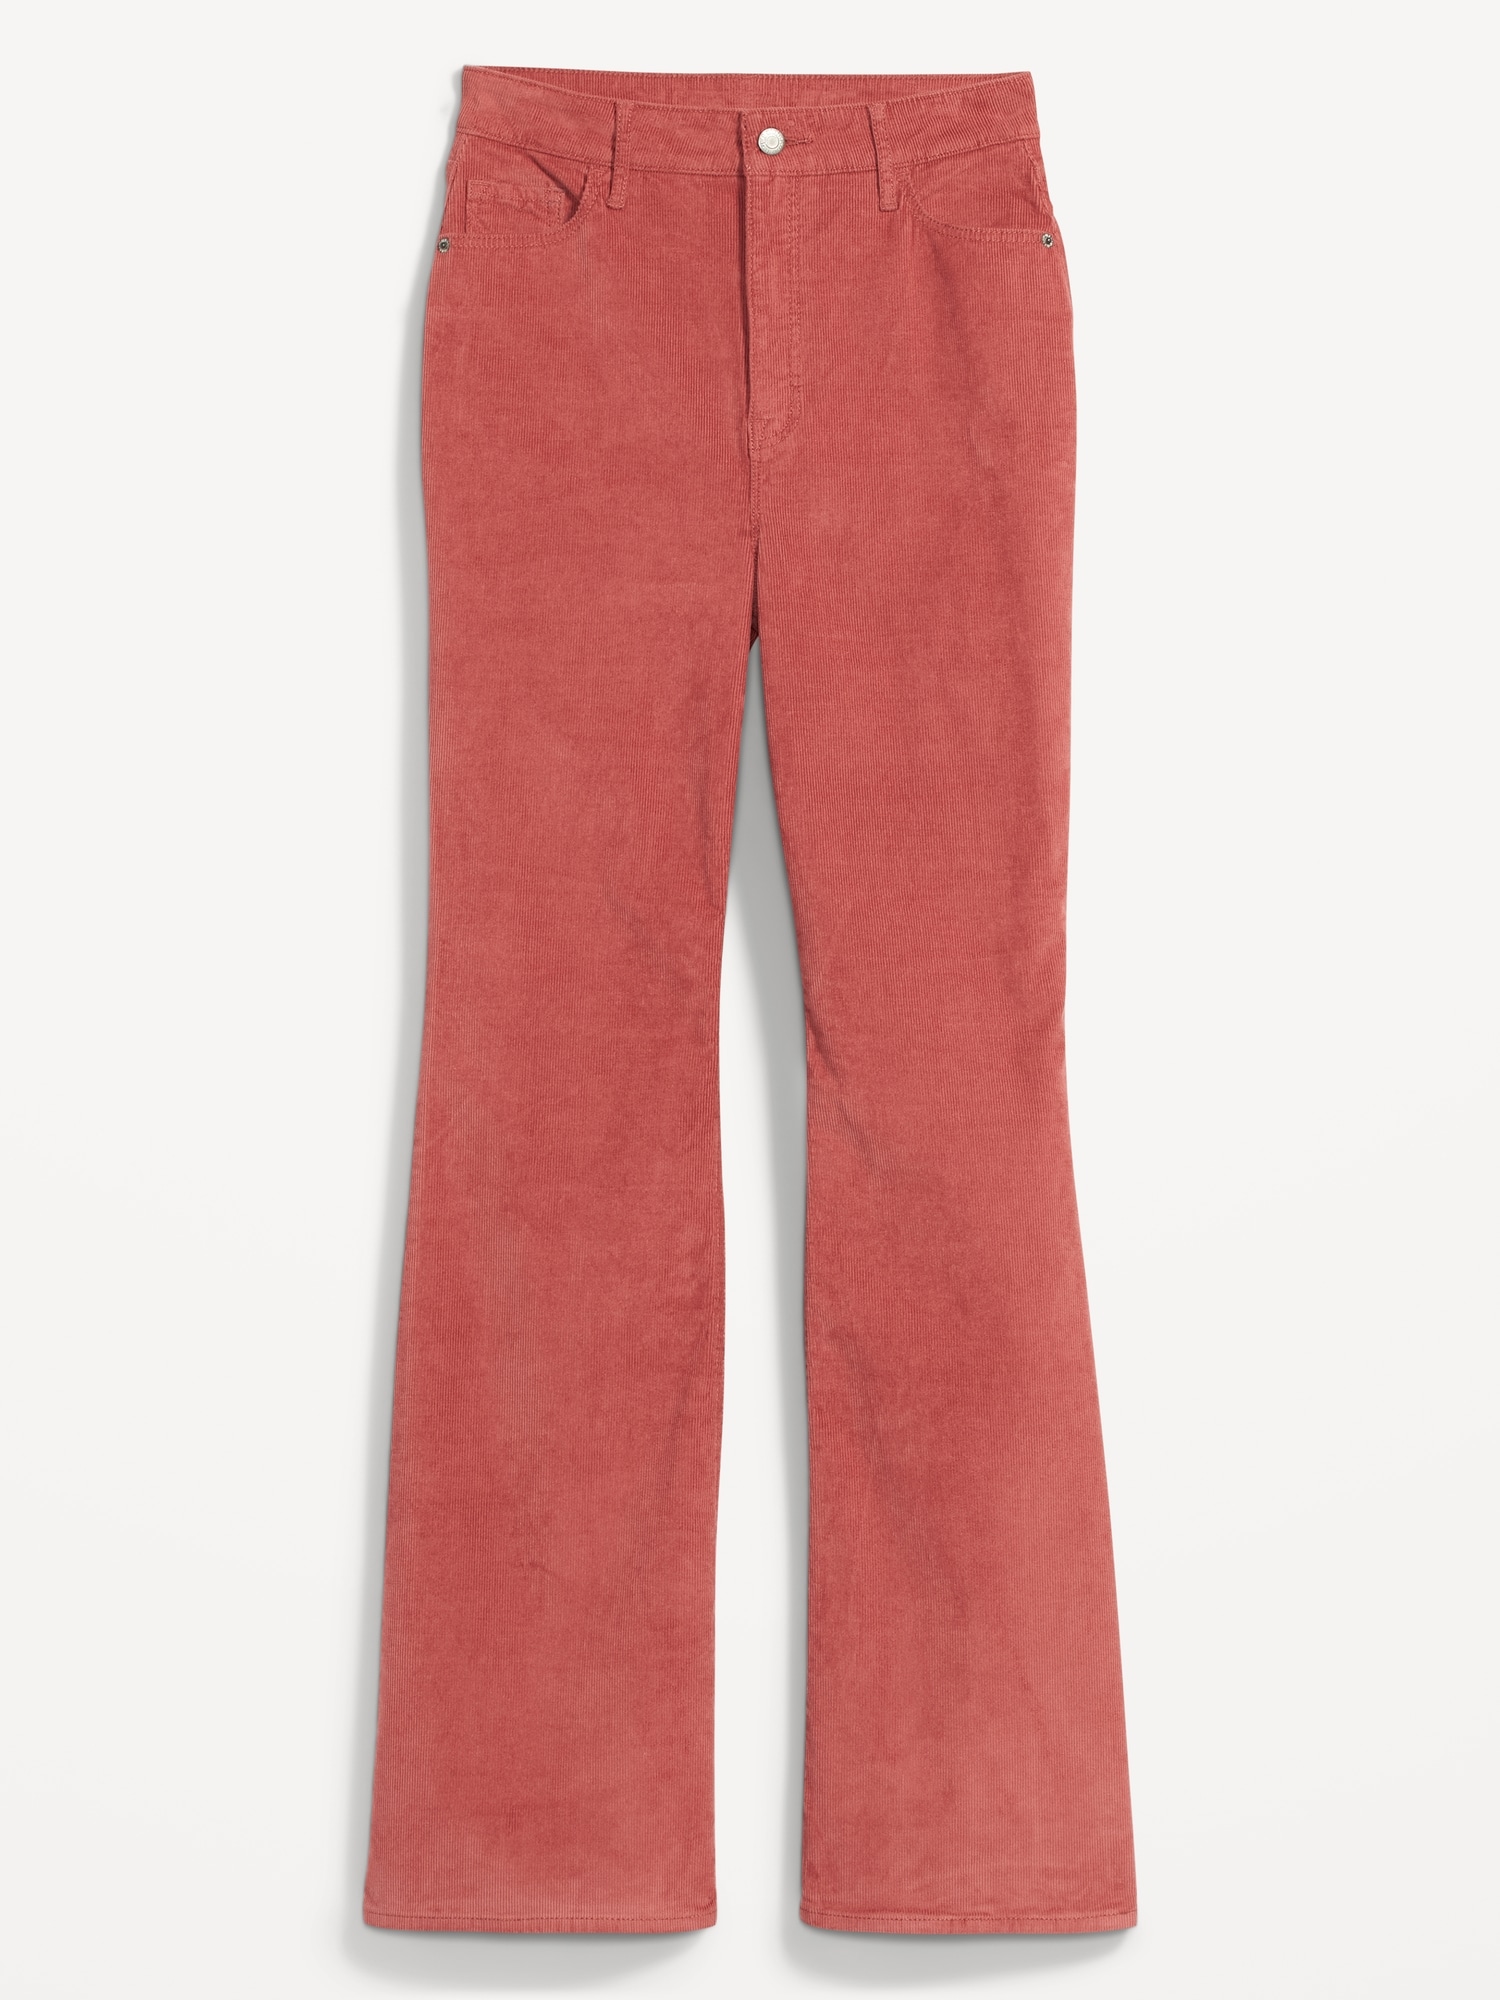 Women's Solid Color Font Slit Hem Corduroy Flare Pants at Rs 1770.96/piece, Ladies Cotton Pant